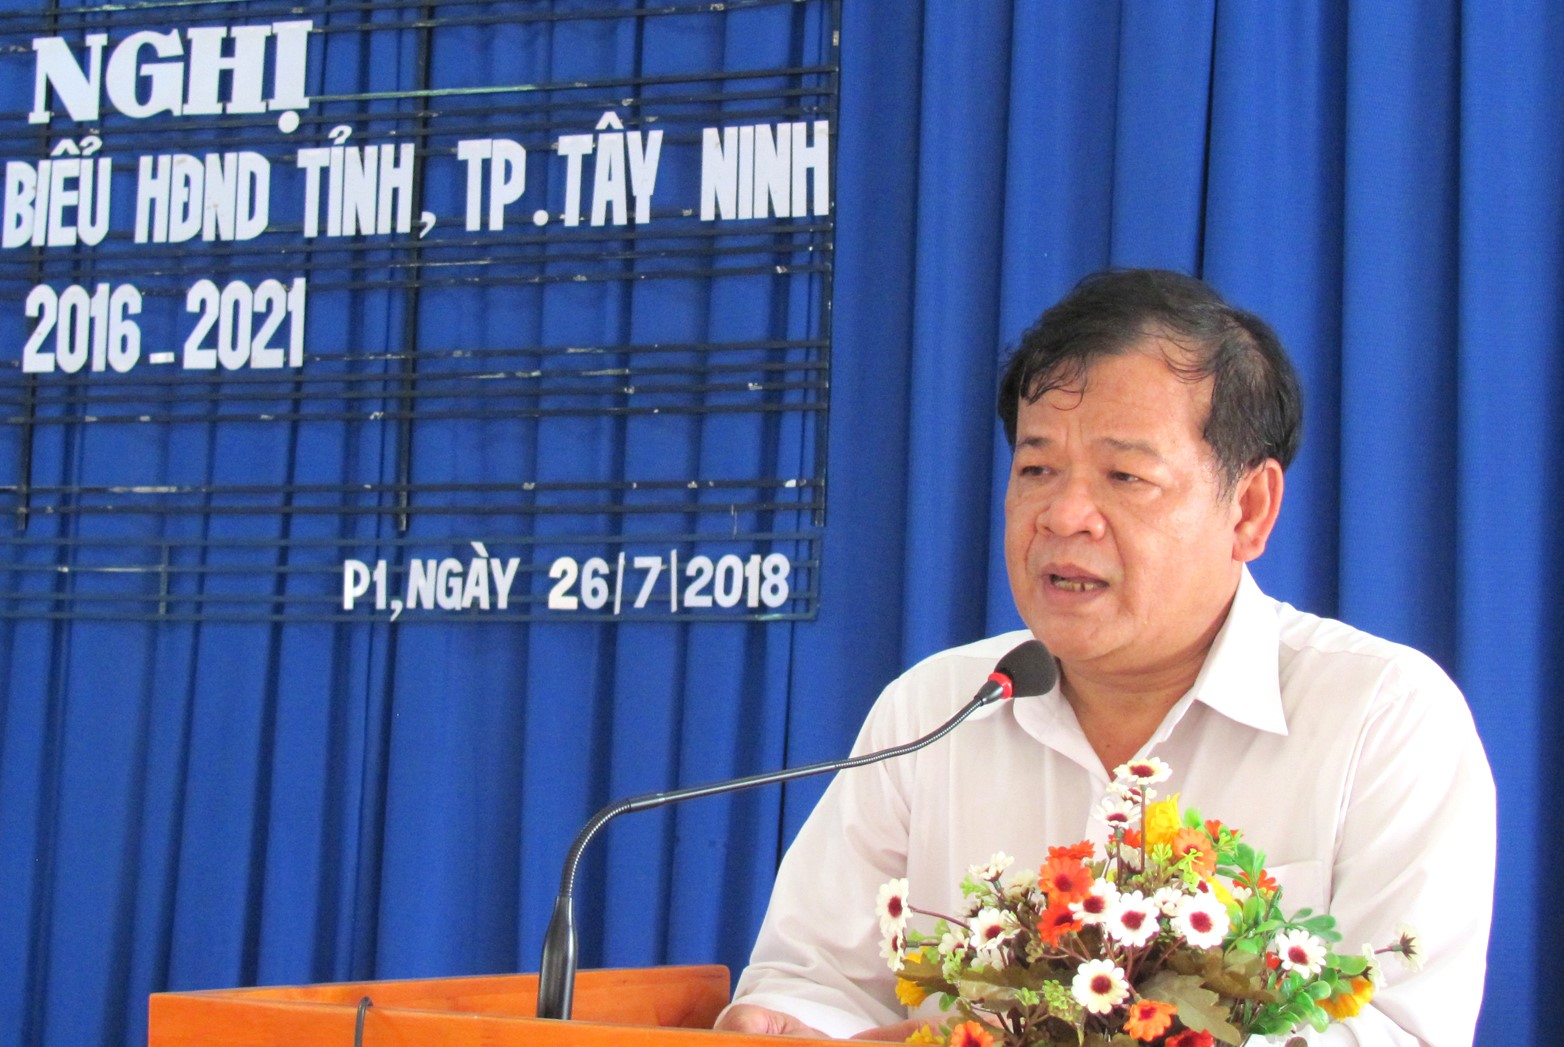 Điểm báo in Tây Ninh ngày 30.7.2018